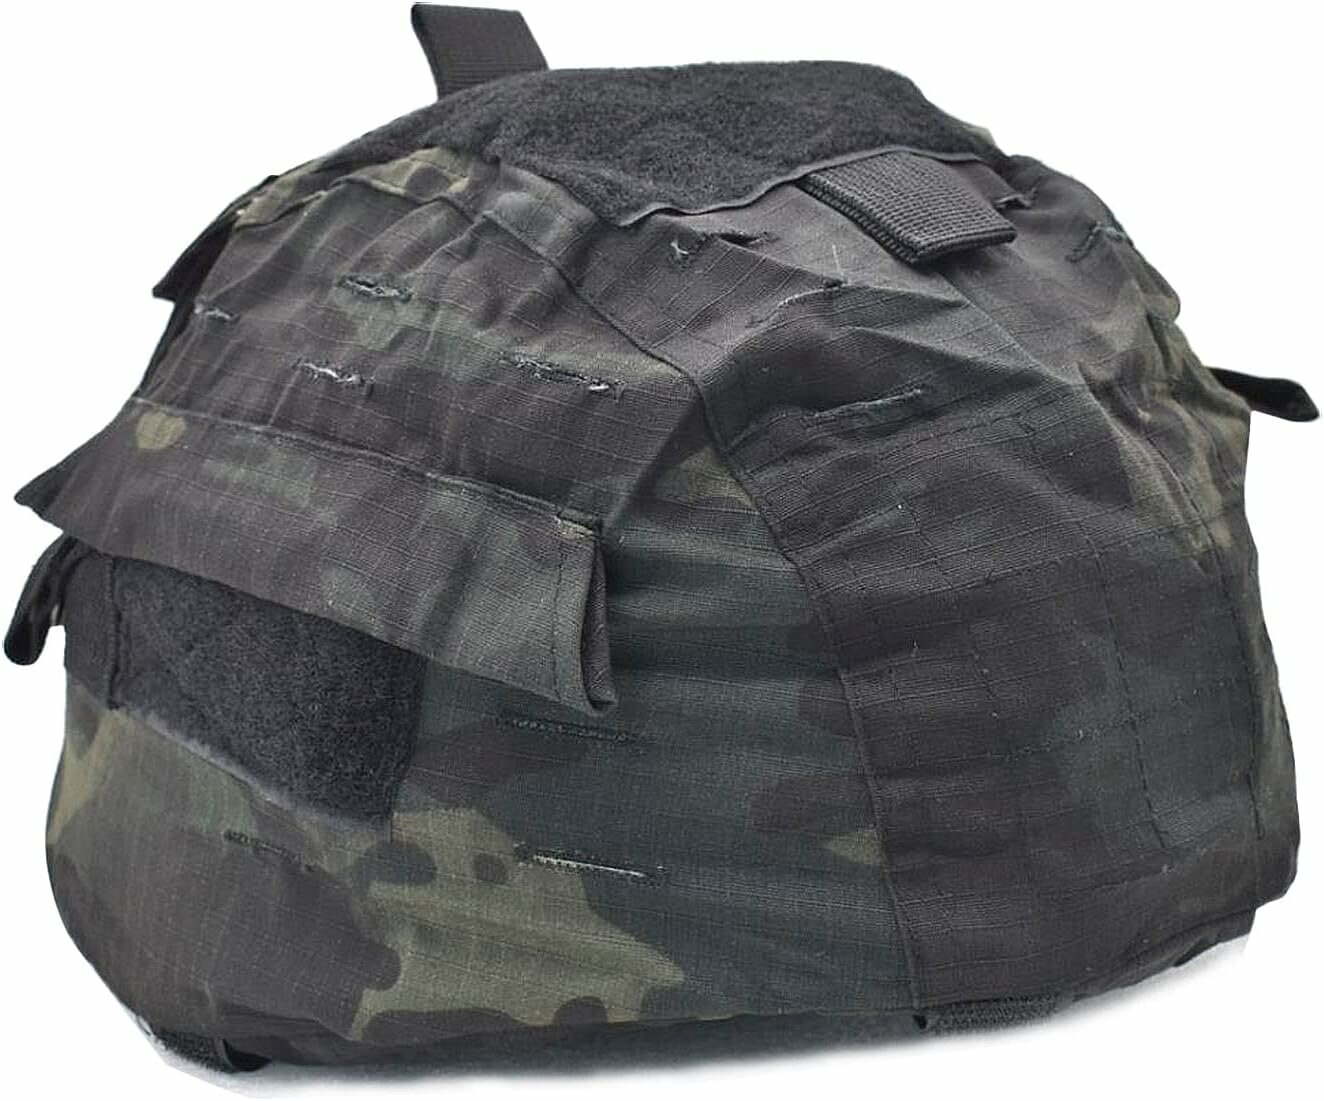 Защитный тканевый чехол кавер для баллистических шлемов типа 6б47 (Ратник) - черный